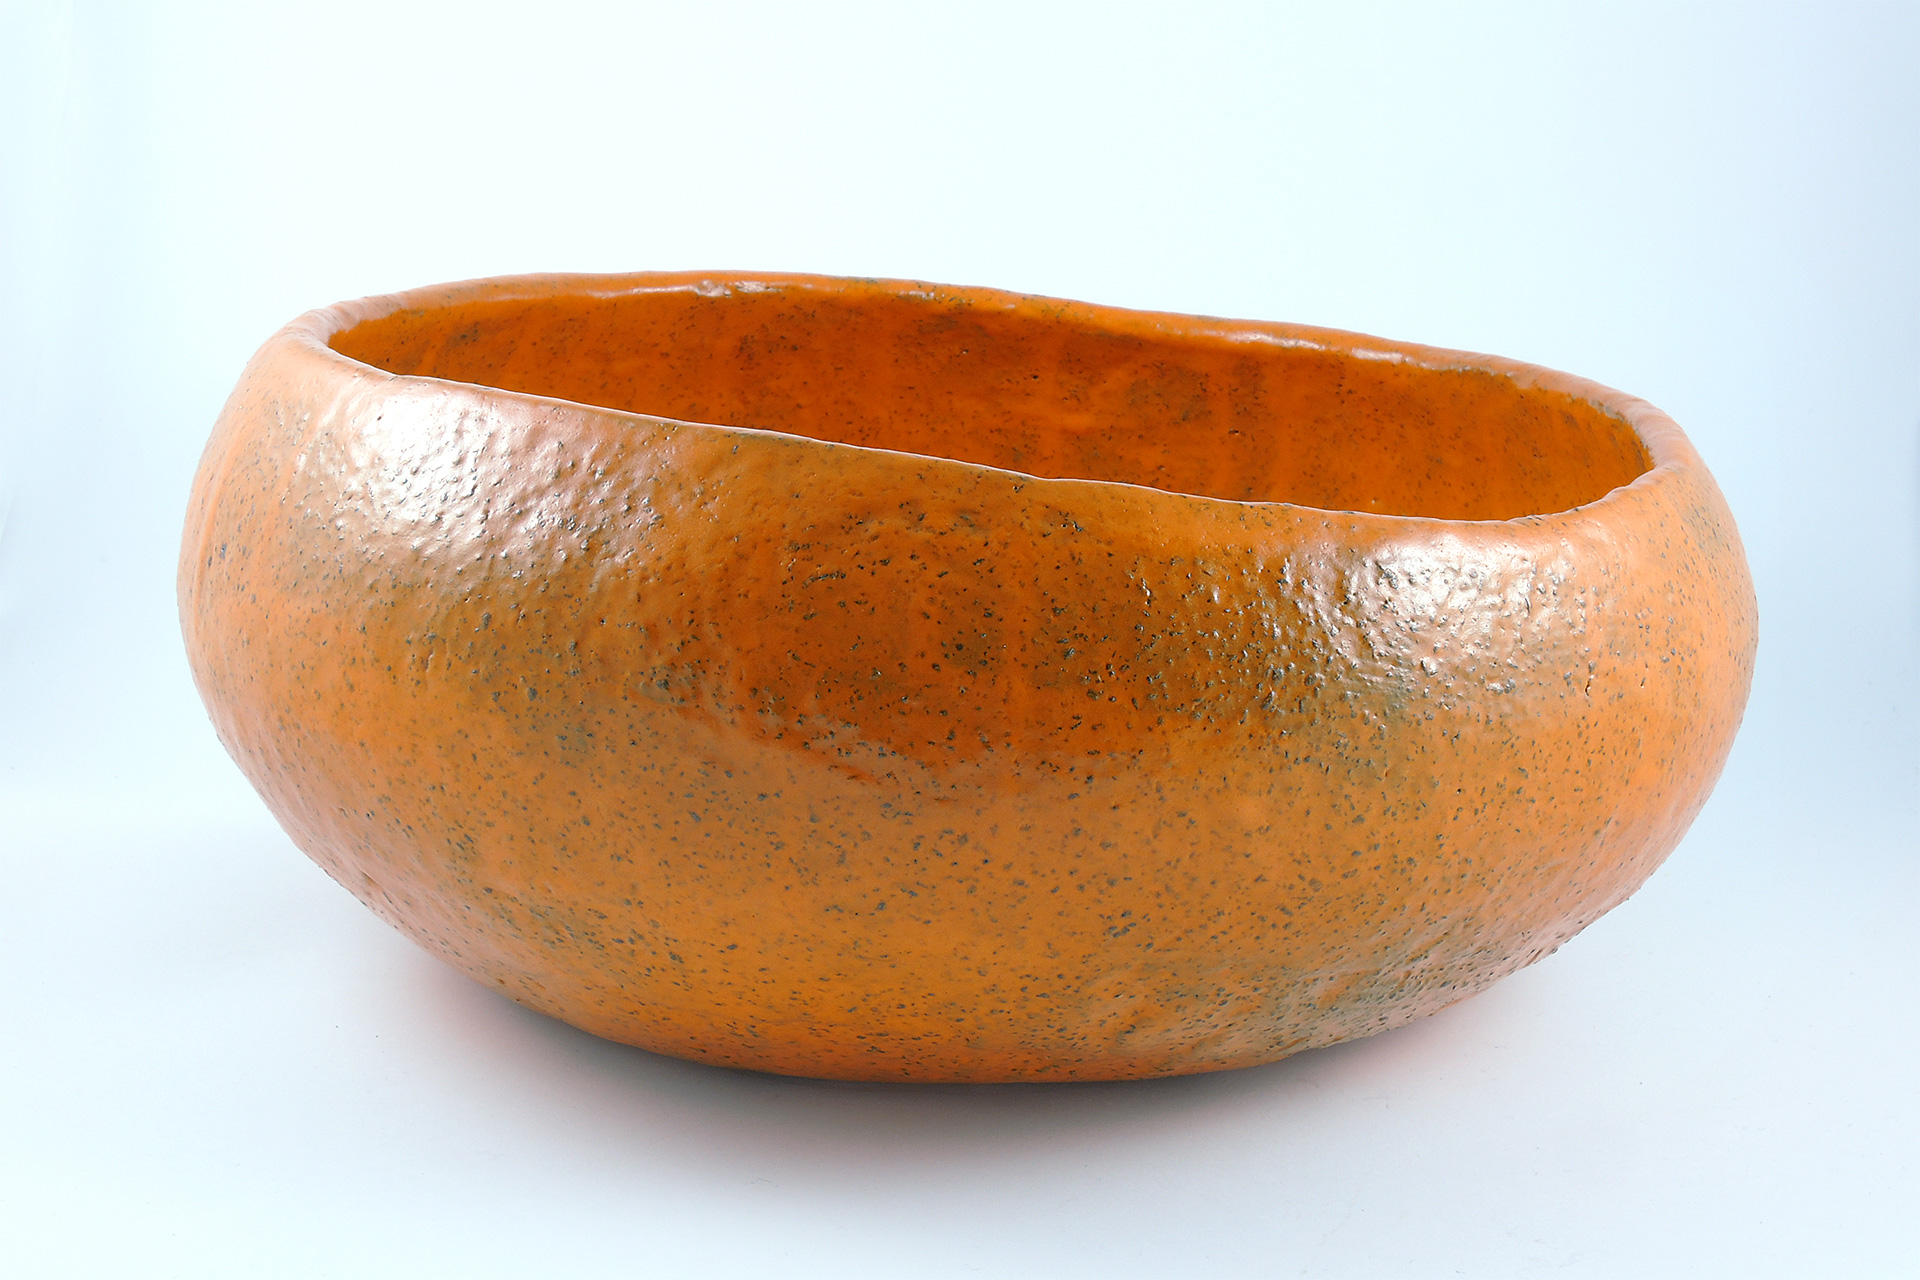 Big orange bowl